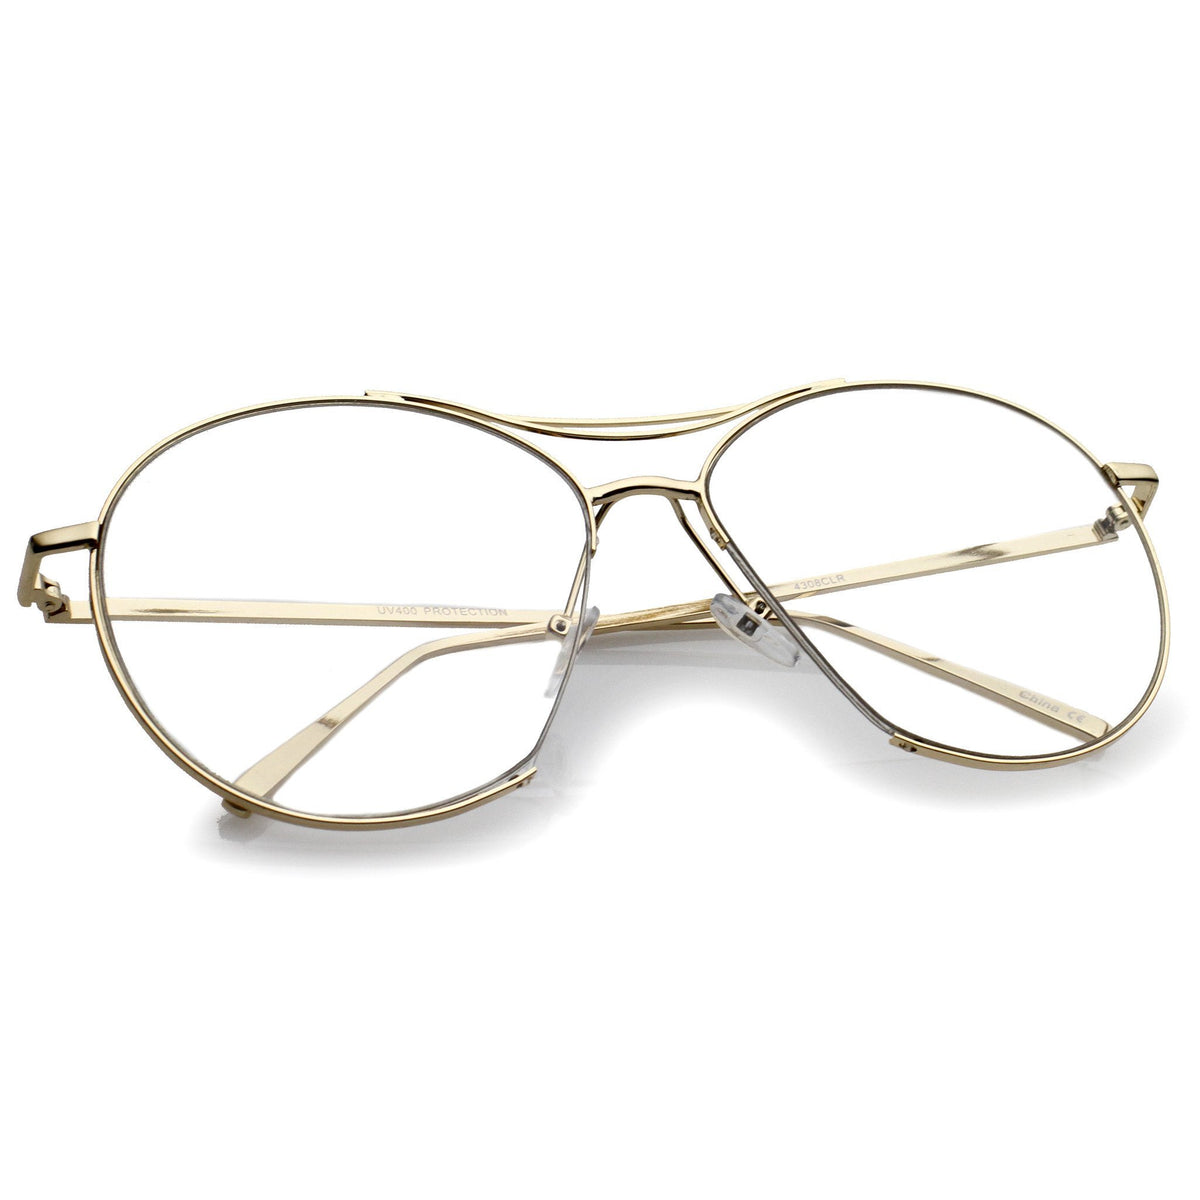 Oversize Retro Modern Clear Lens Aviator Glasses